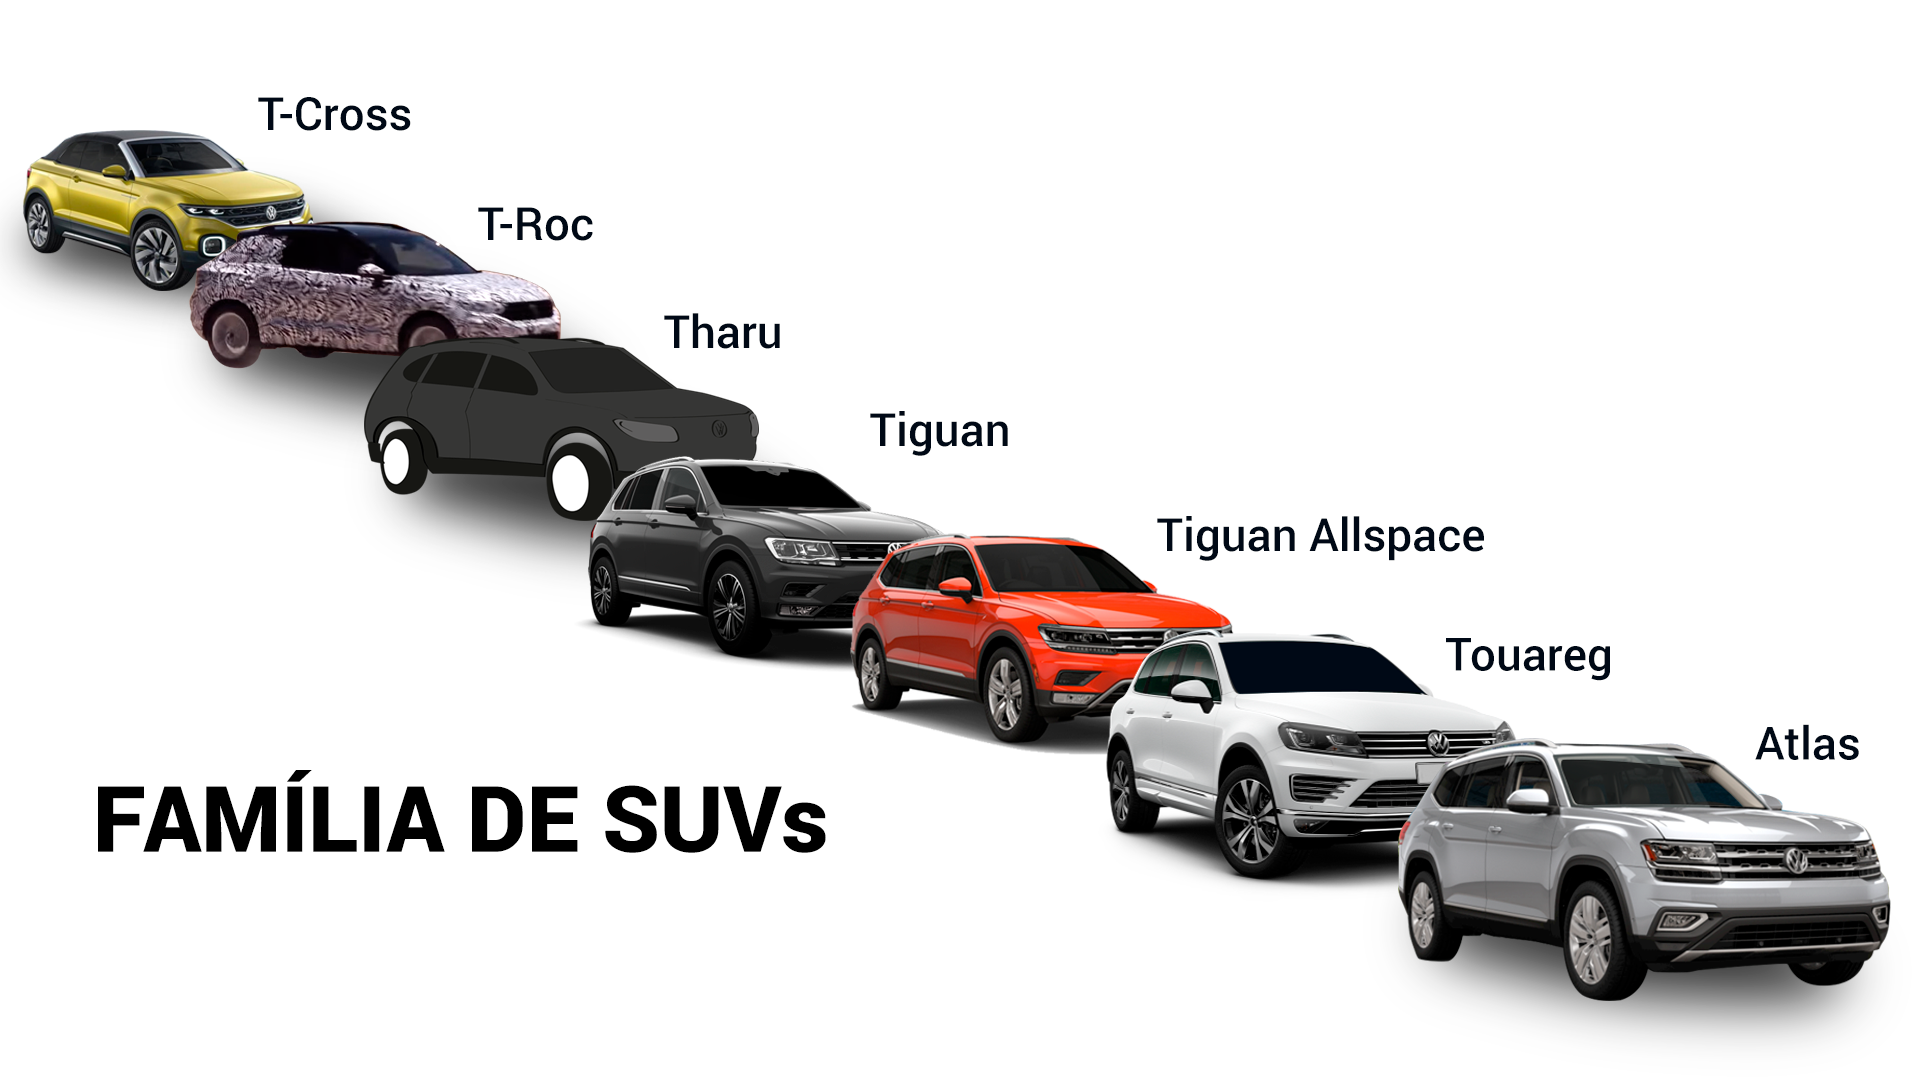 Família de SUVs da VW, que inclui o Tharu